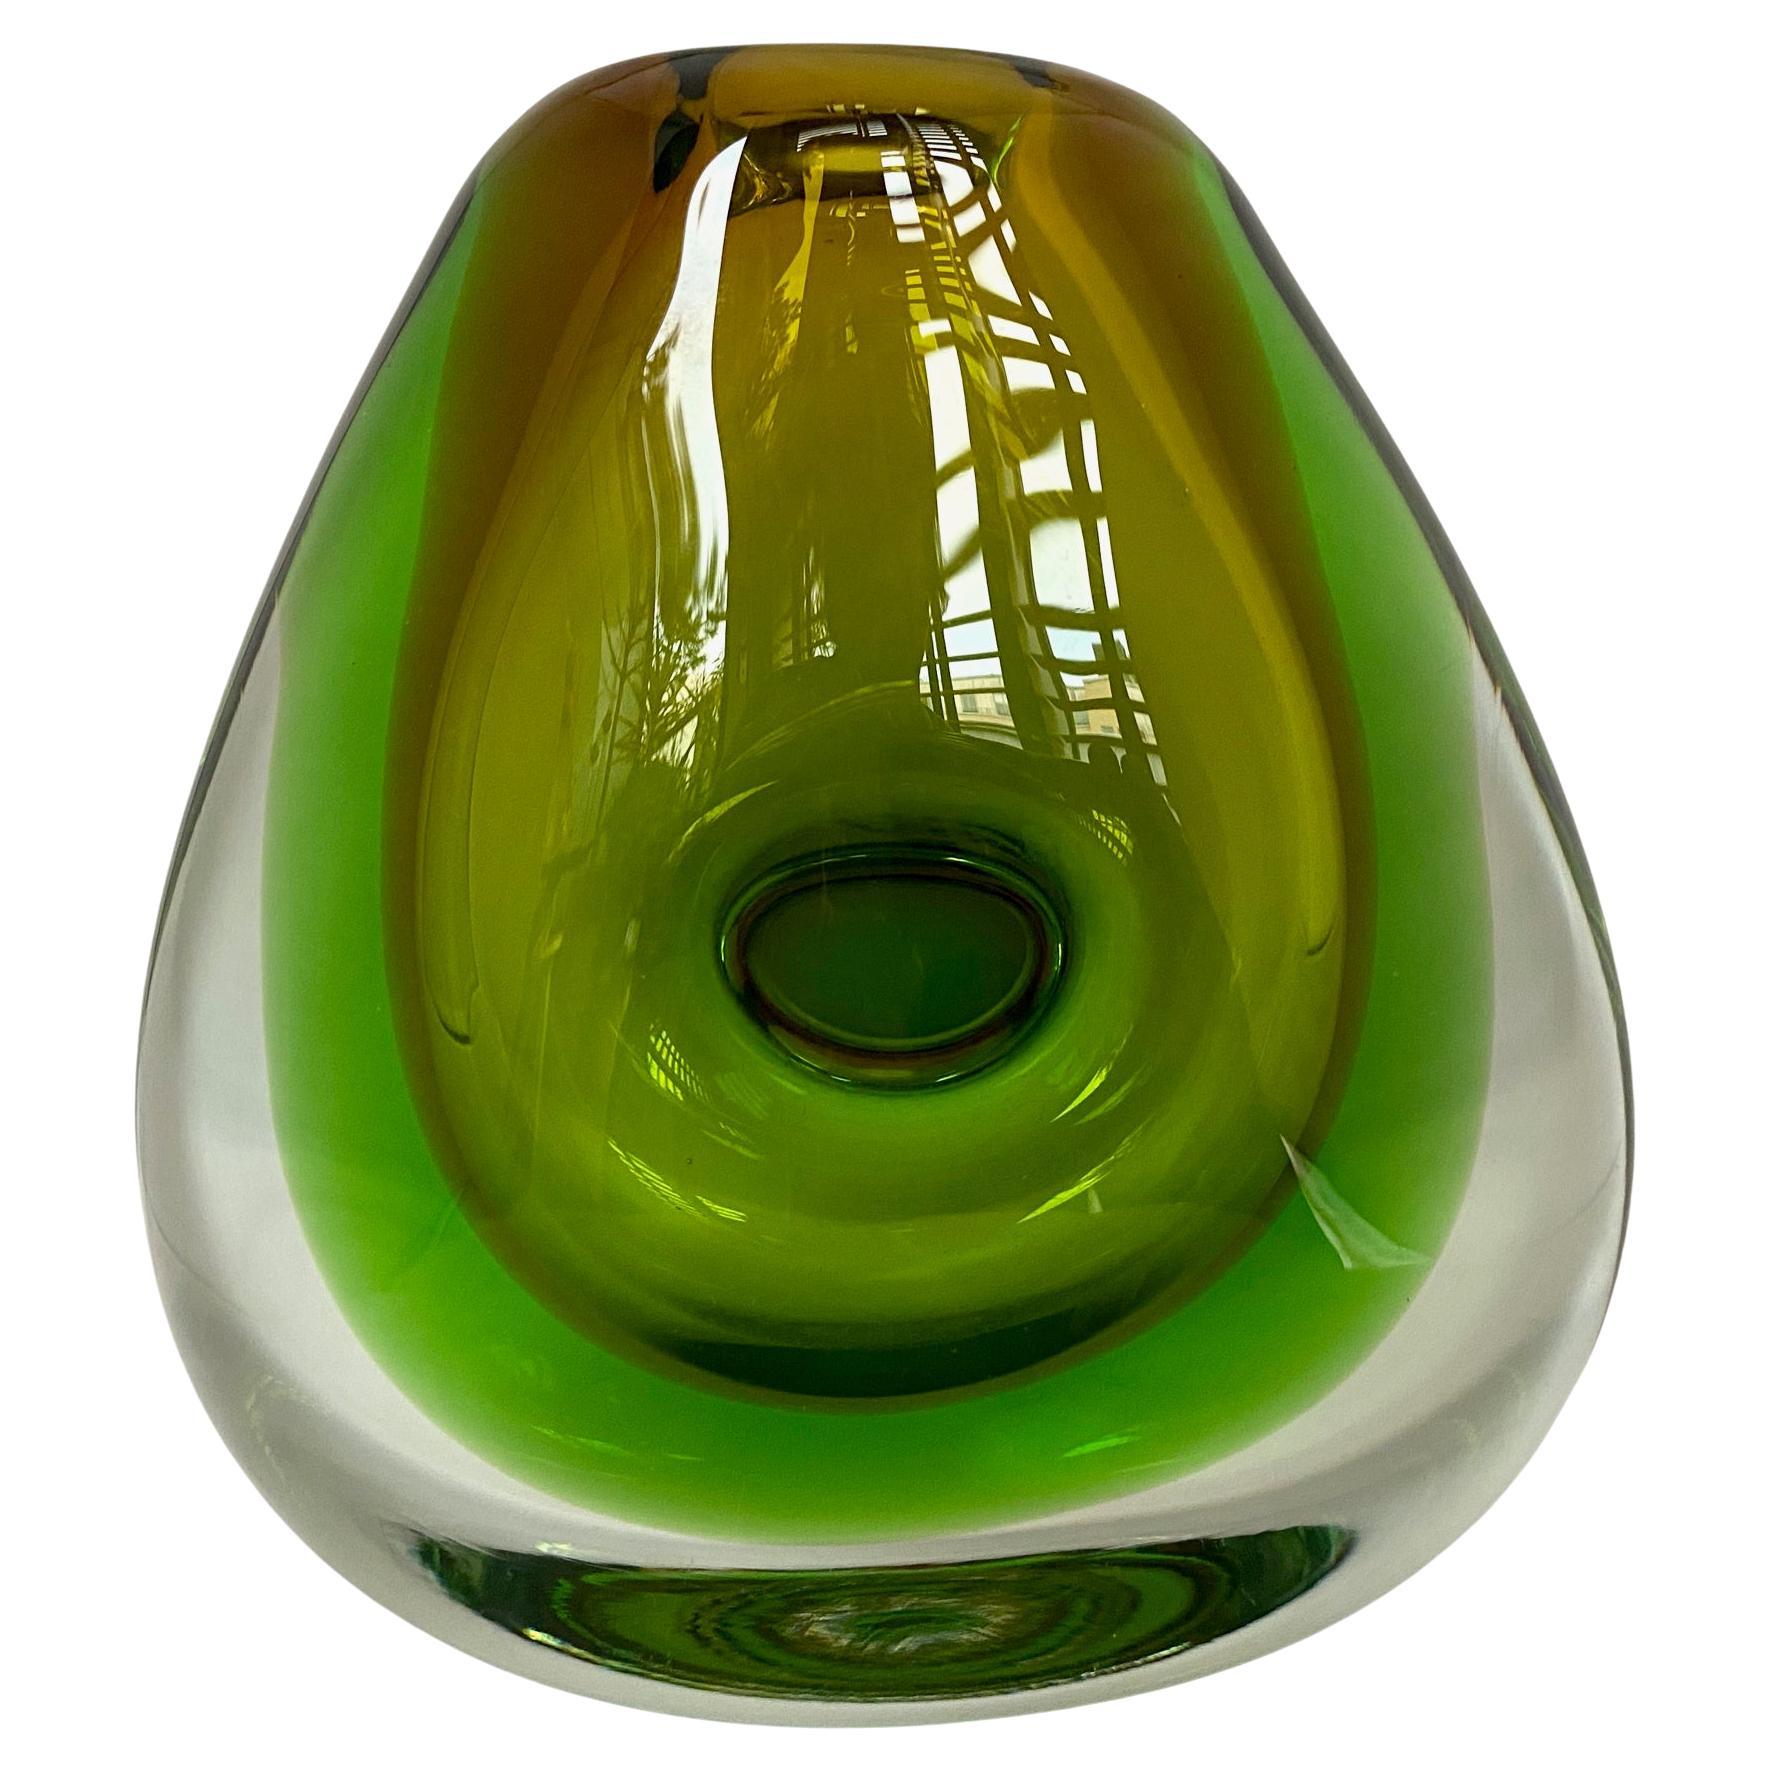 Schwere Vase aus grünem böhmischem Kunstglas, 1960er Jahre, von Vladimir Mika für Moser